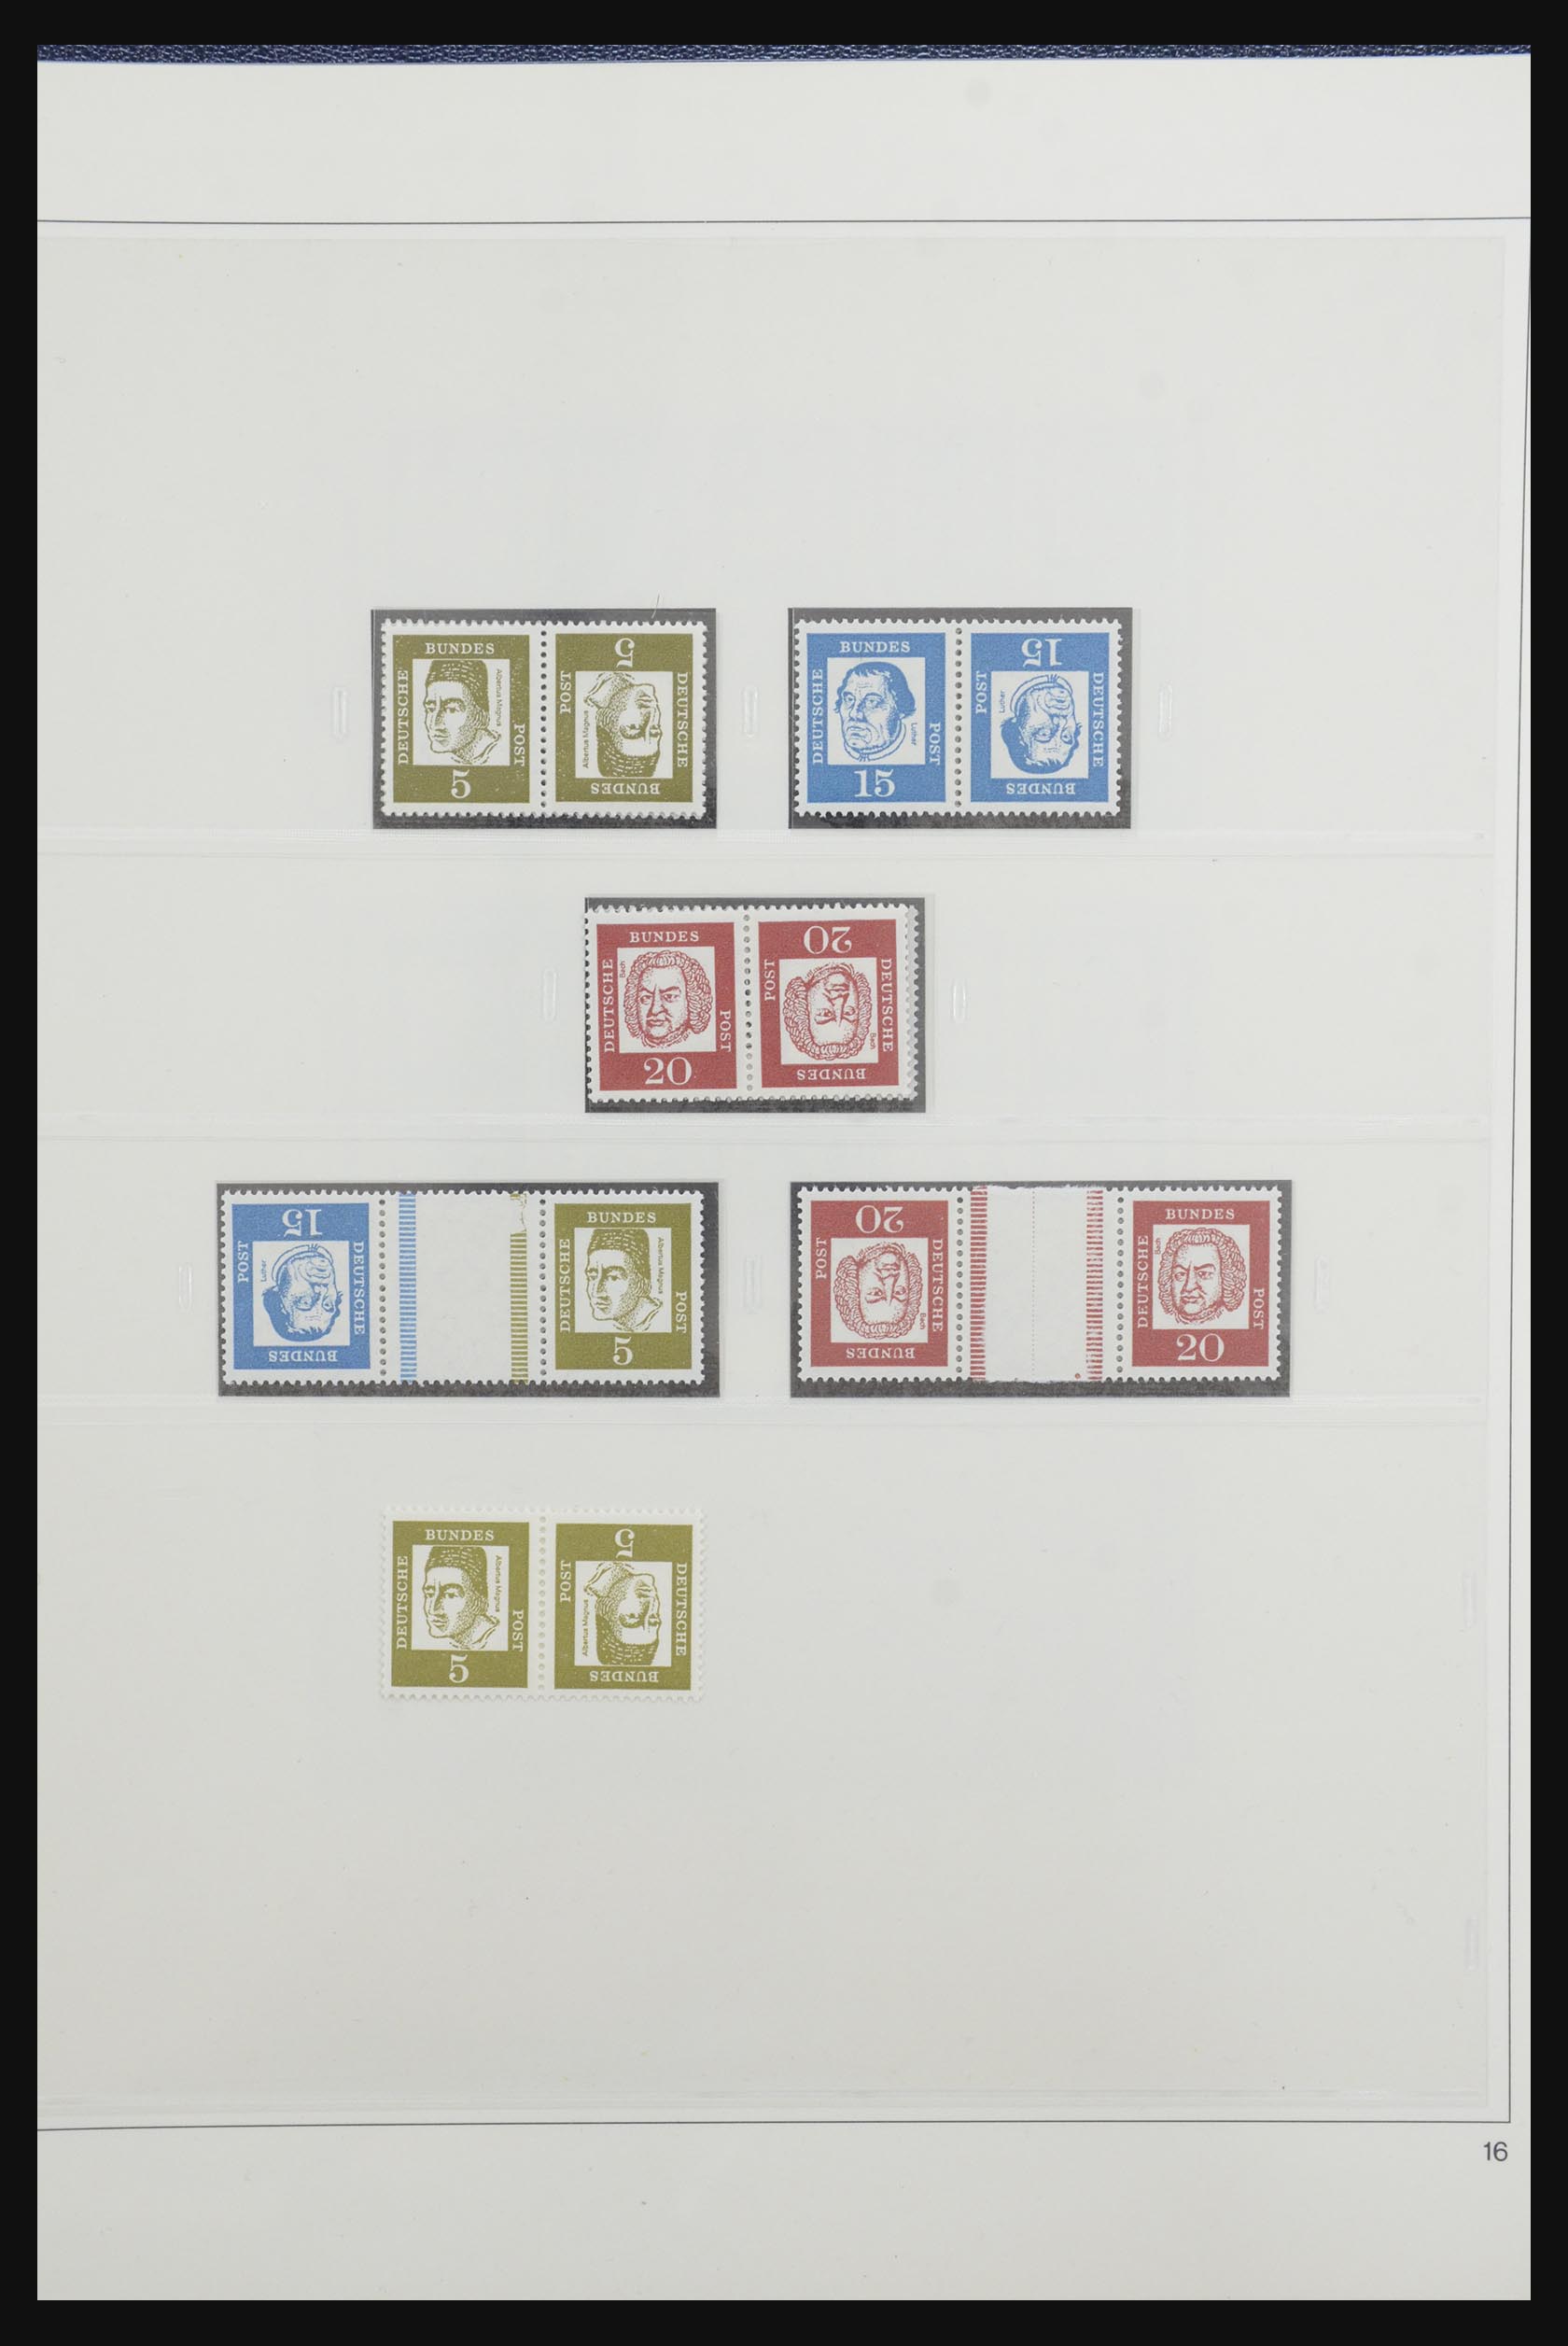 31842 020 - 31842 Bundespost combinations 1951-2003.